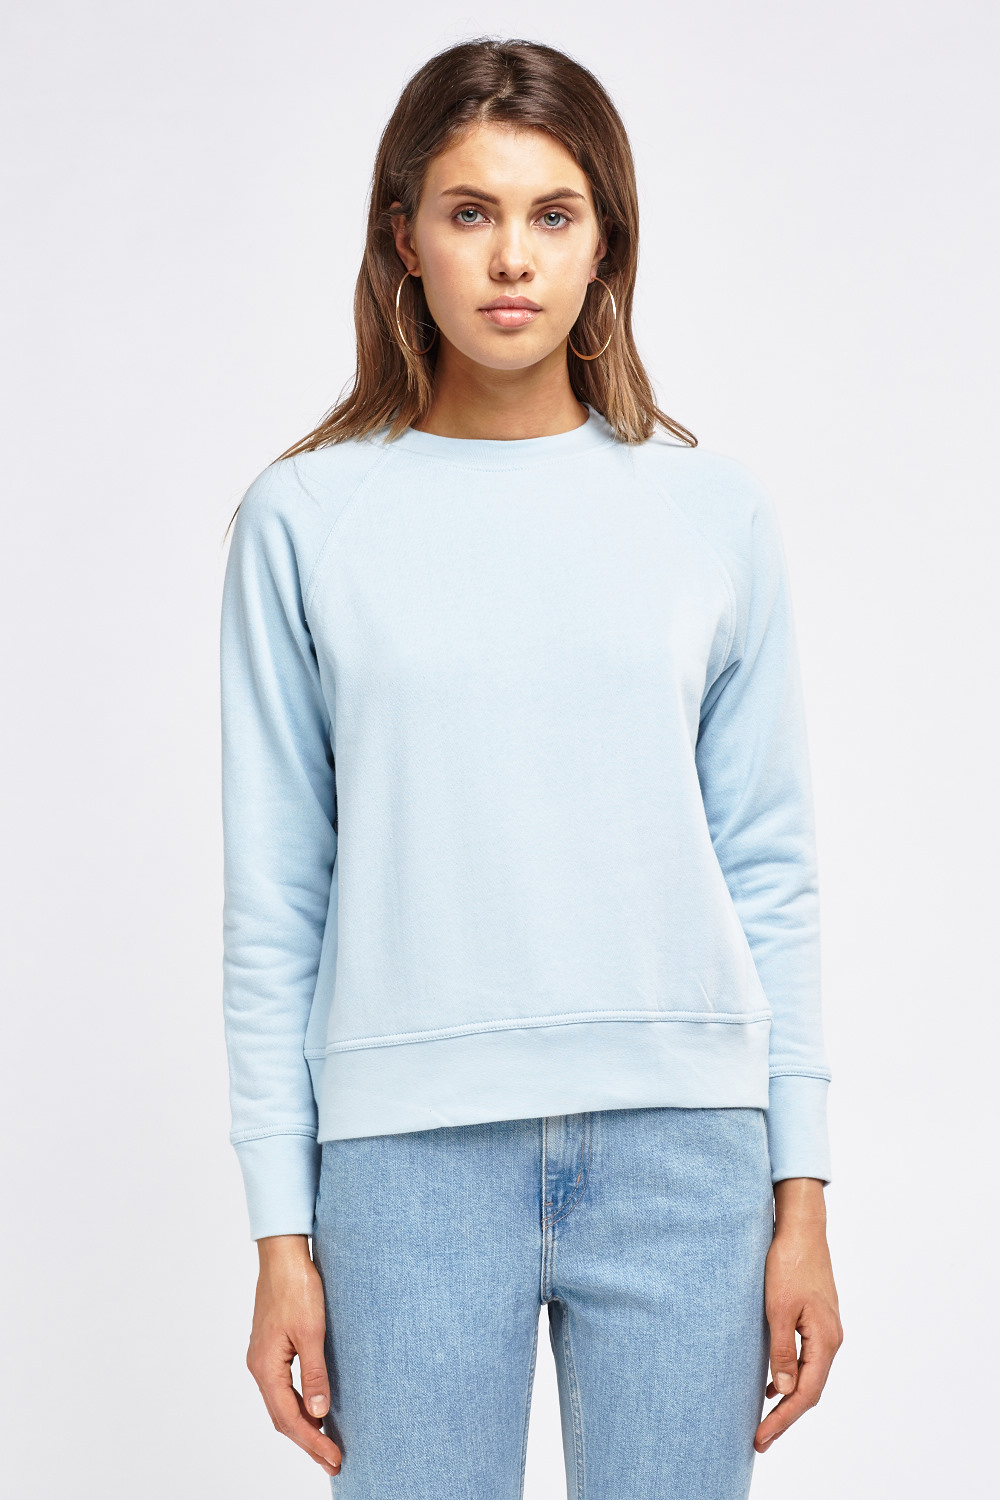 Raglan Sleeve Sweatshirt - Just $6